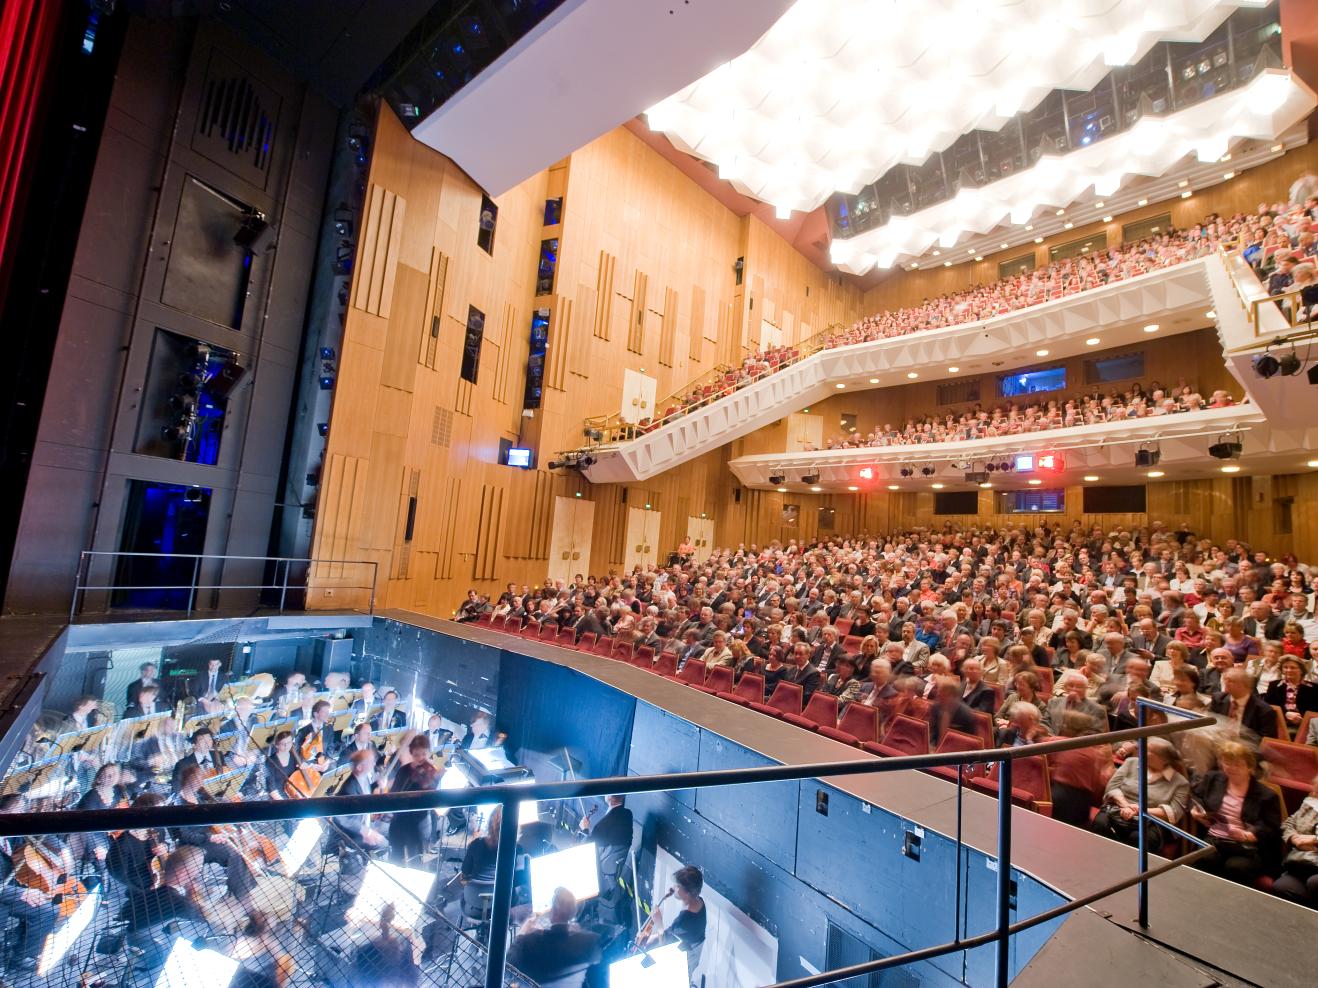 Theatersaal mit Publikum und Musiker*innen im Orchestergraben